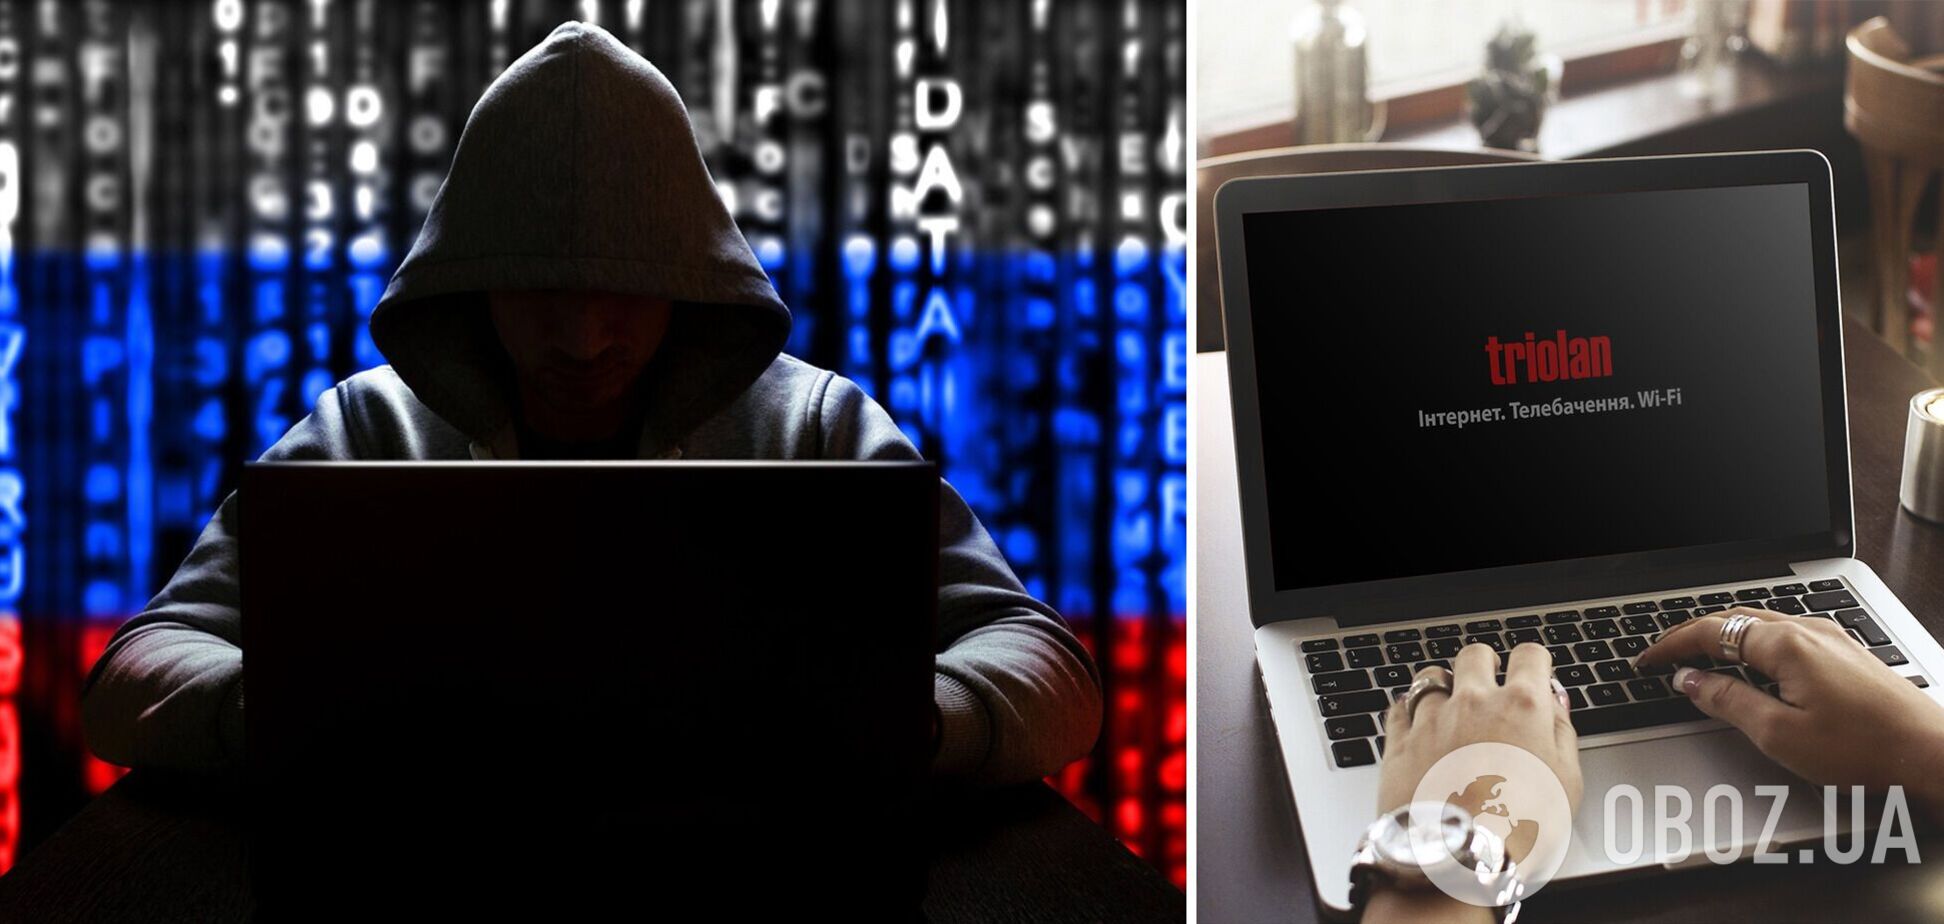 Интернет-провайдер Triolan заявил, что подвергся хакерской атаке со стороны РФ